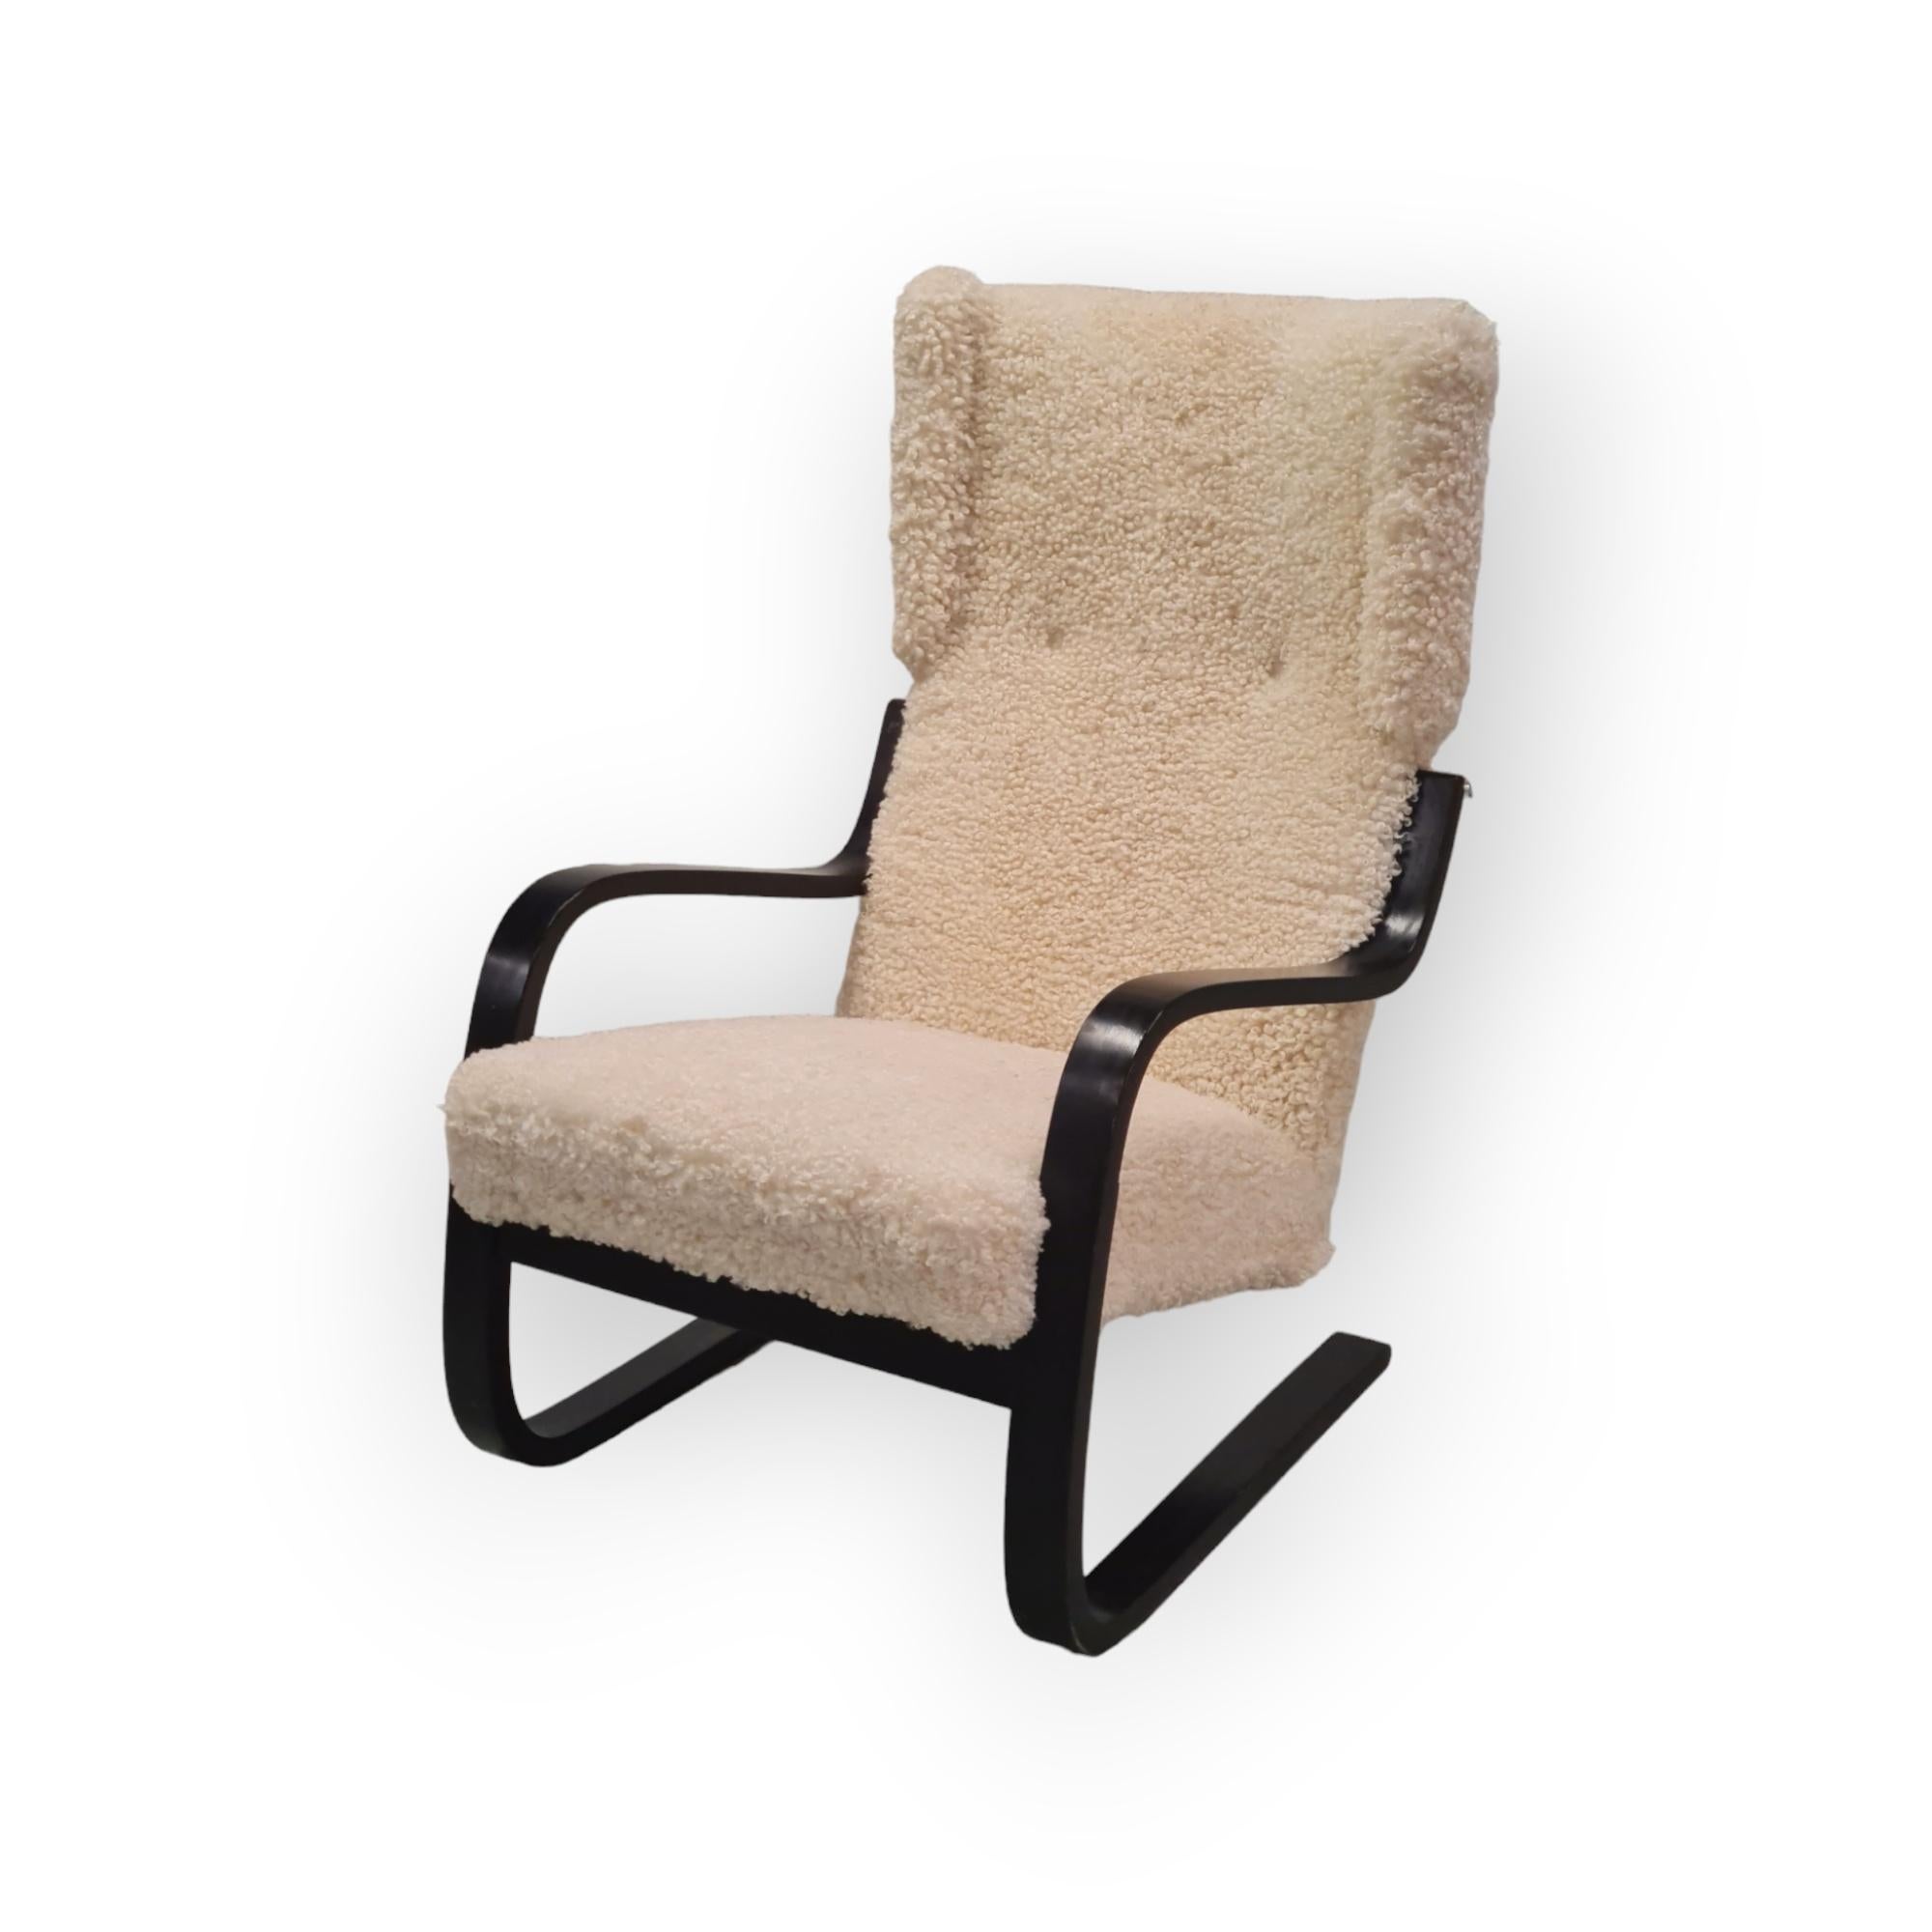 Eine schöne und frühe Version des ikonischen Aalto-Sessels Modell 401, der erstmals 1933 entworfen wurde. Der Stuhl 401 war Teil des ikonischen Paimio-Sanatoriums, das den Namen Aalto im Grunde genommen zu architektonischem Ruhm verhalf.
Der Stuhl